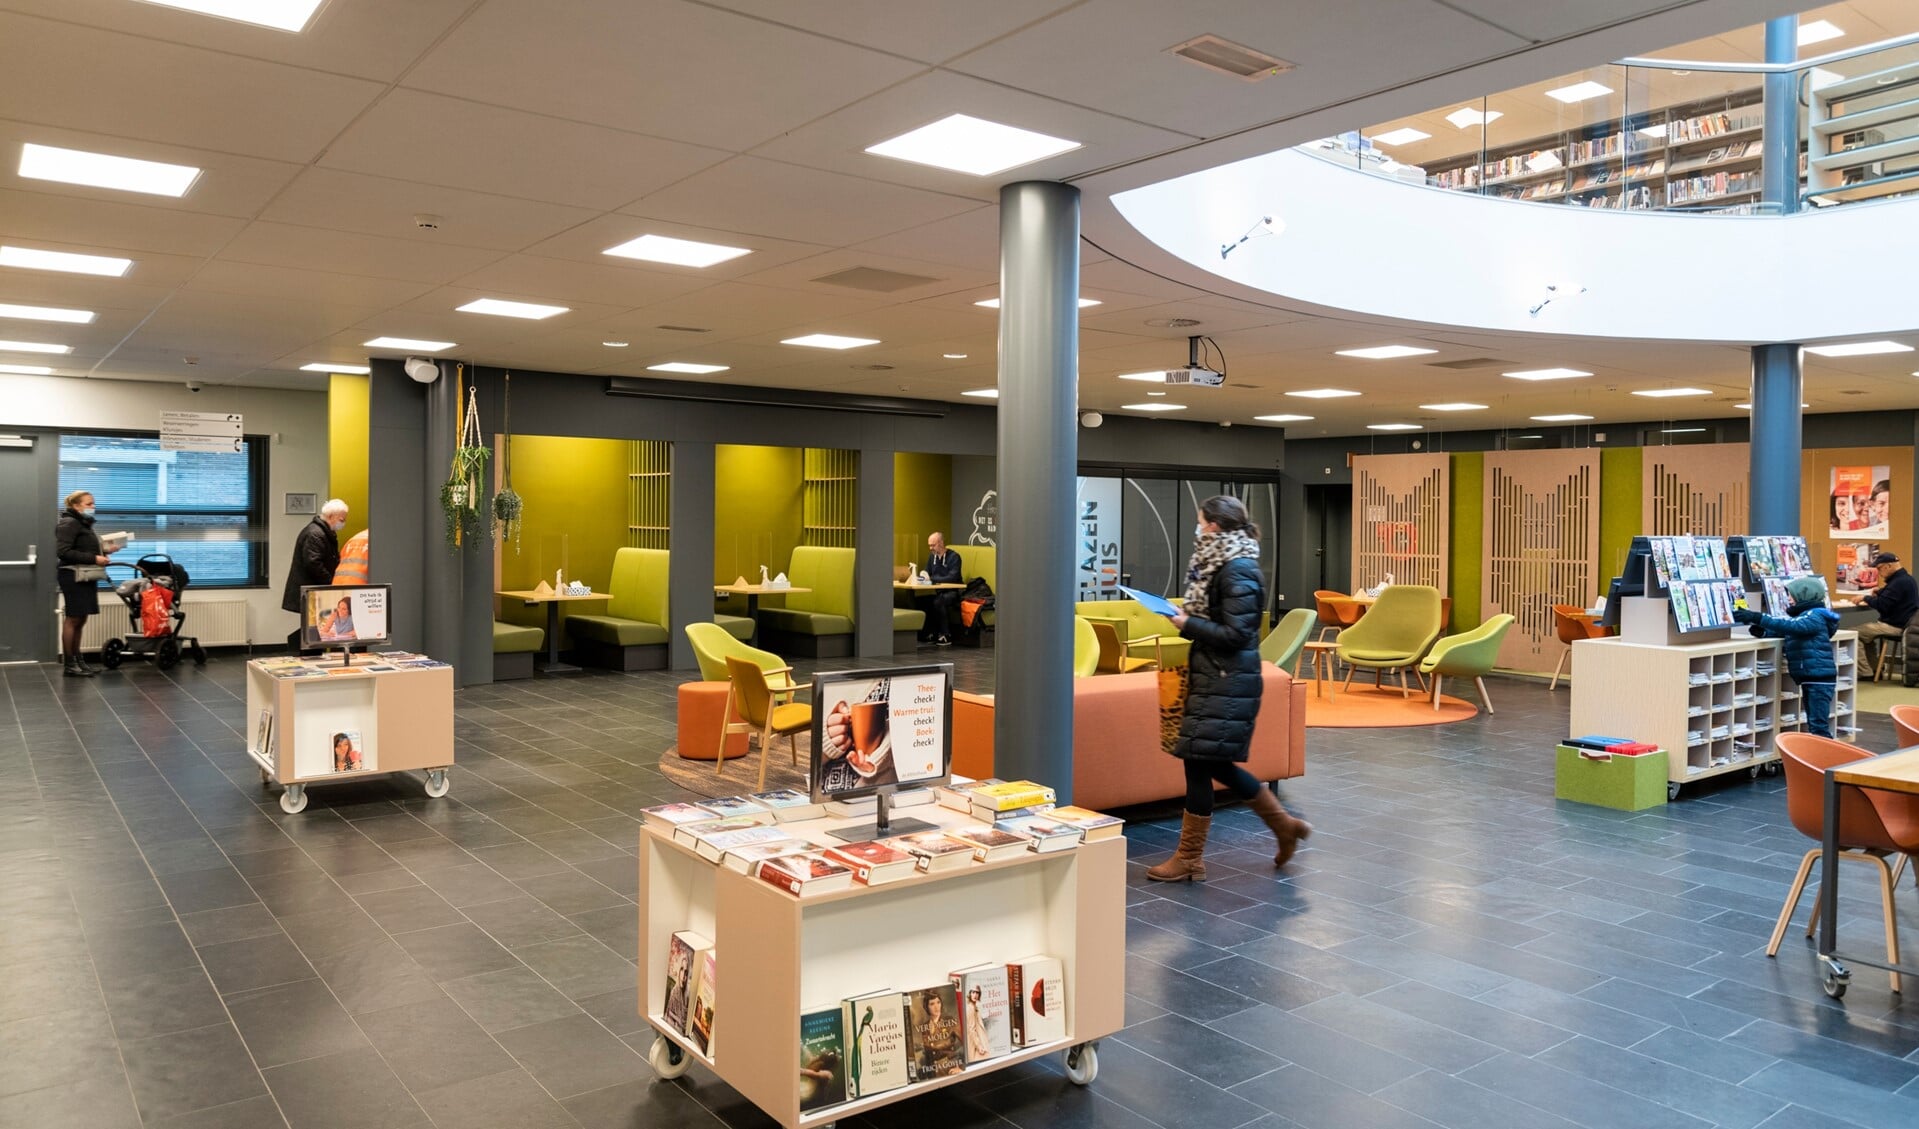 De bibliotheek in Barneveld is momenteel een populair toevluchtsoord voor mensen die er even uit willen.